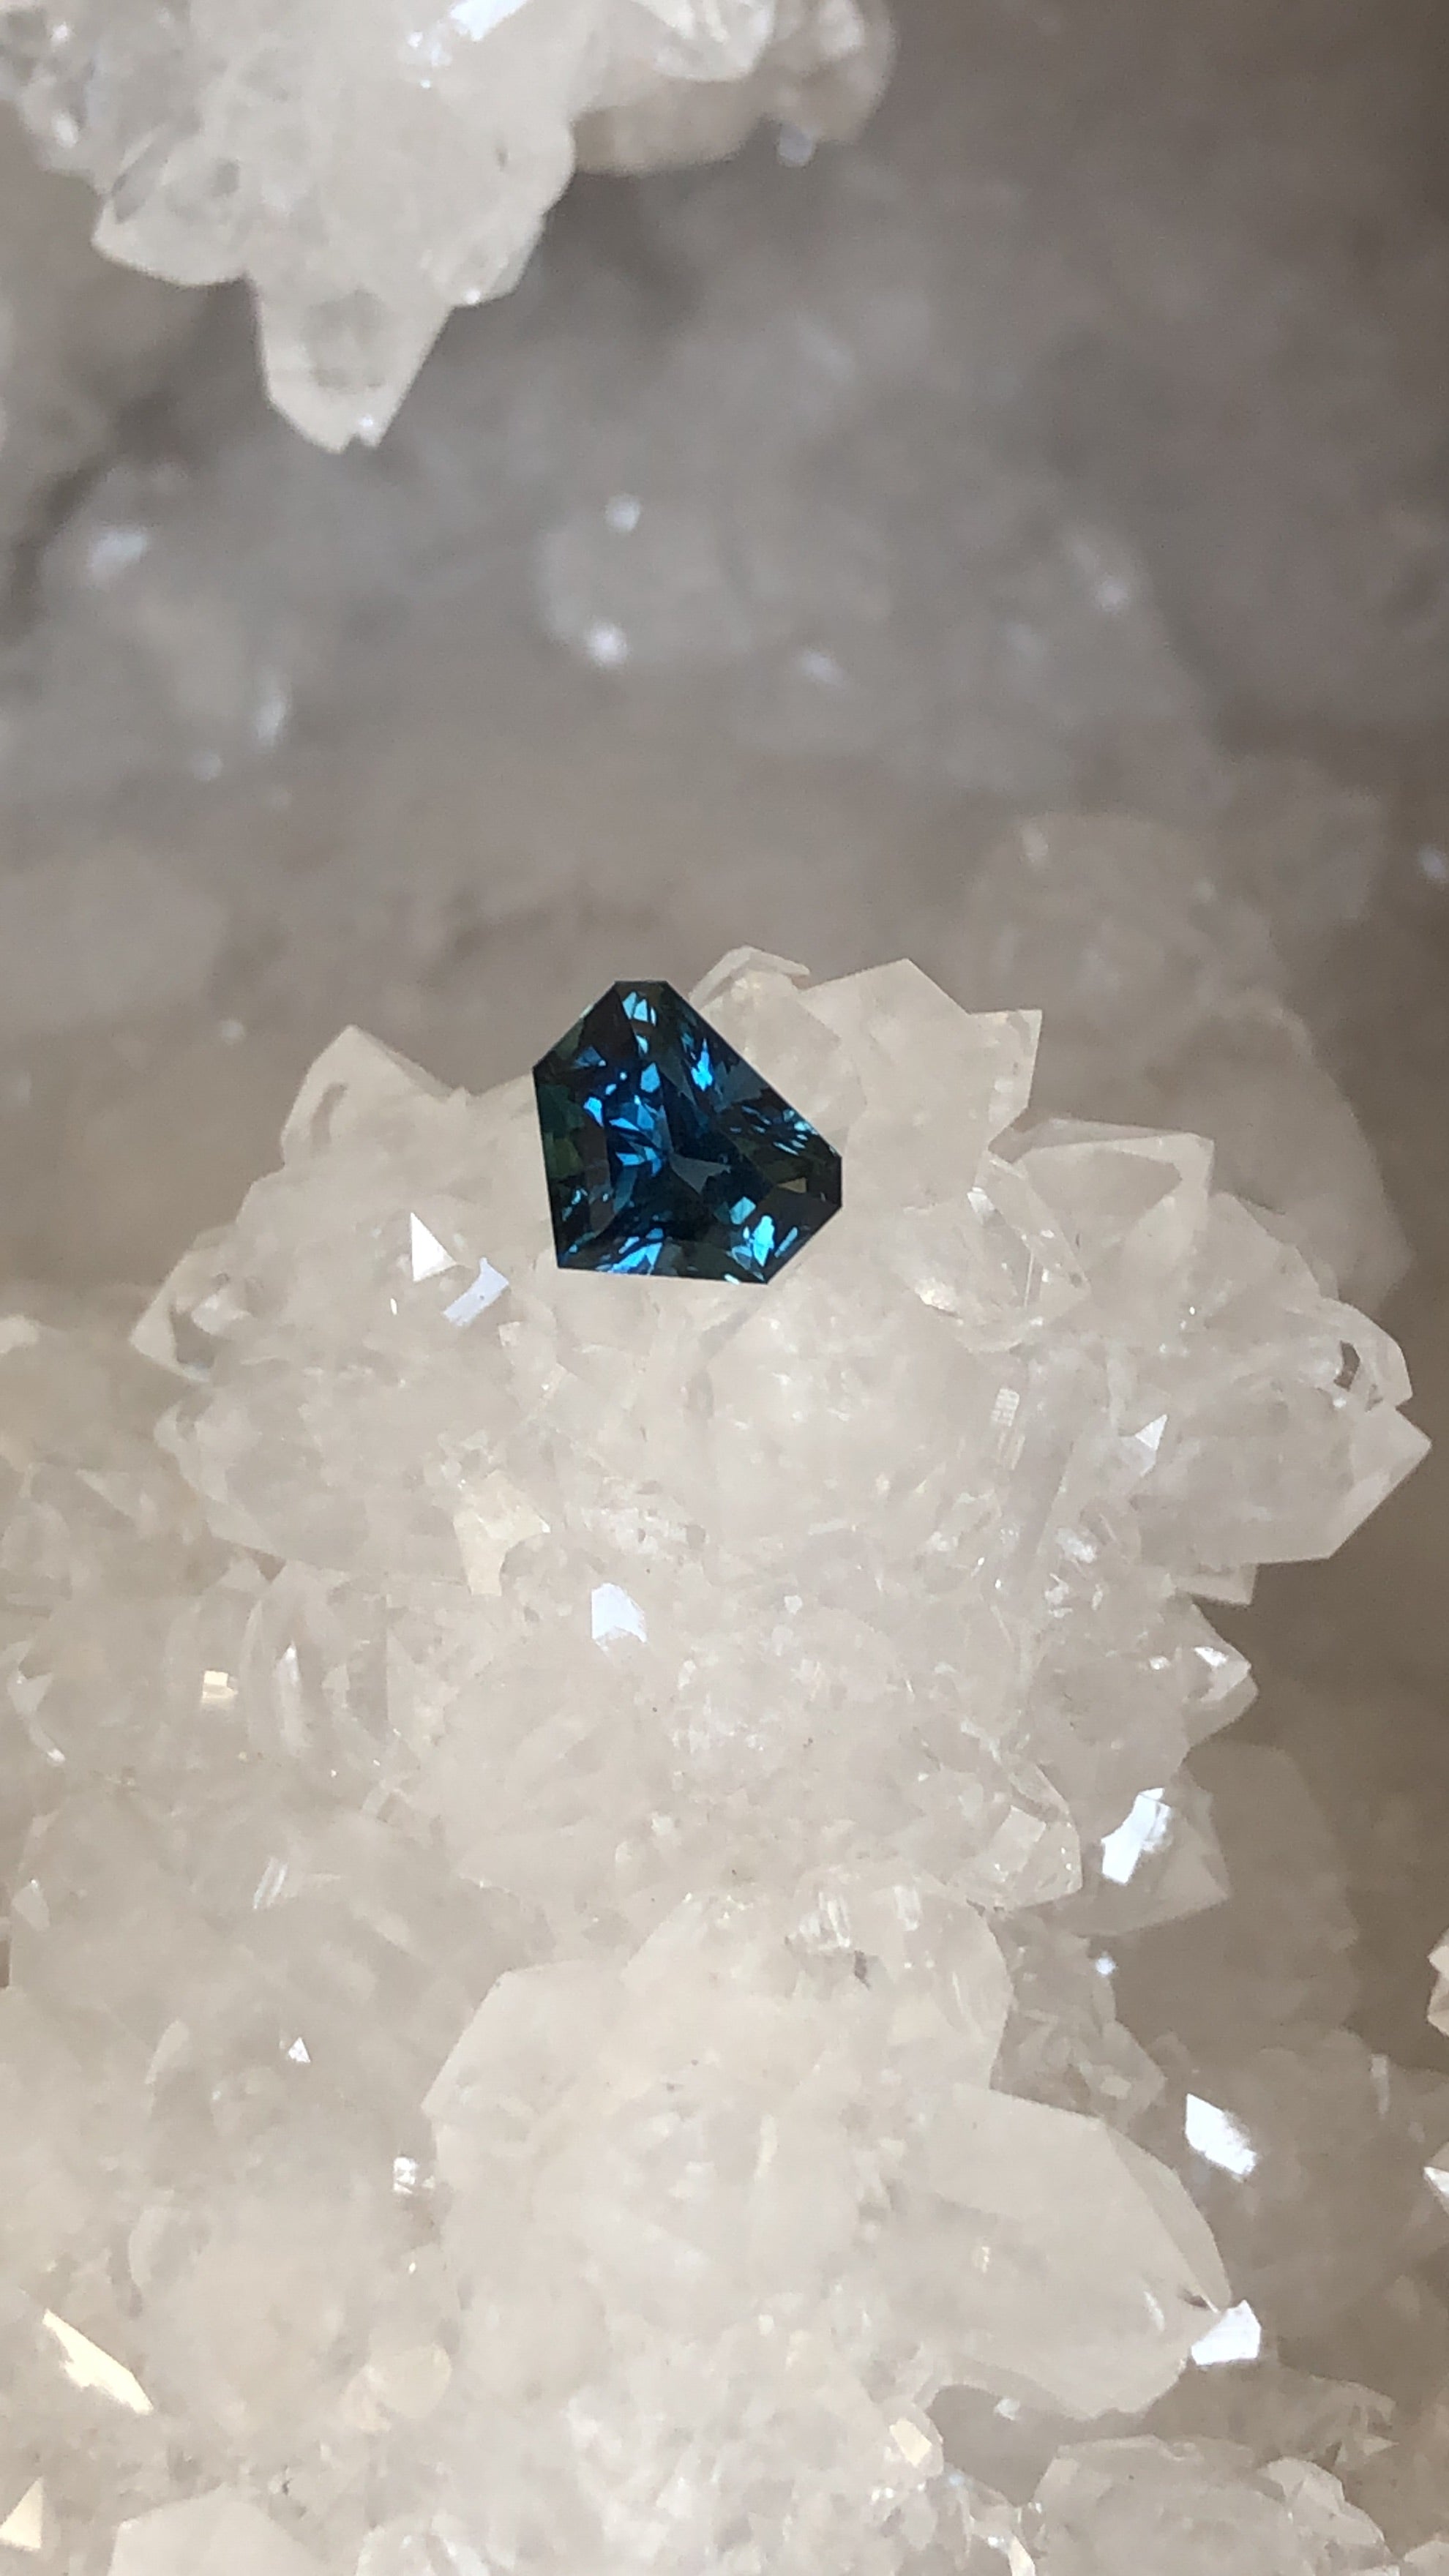 Madagascar Sapphire 1.36 CT Blue Green Shield Cut